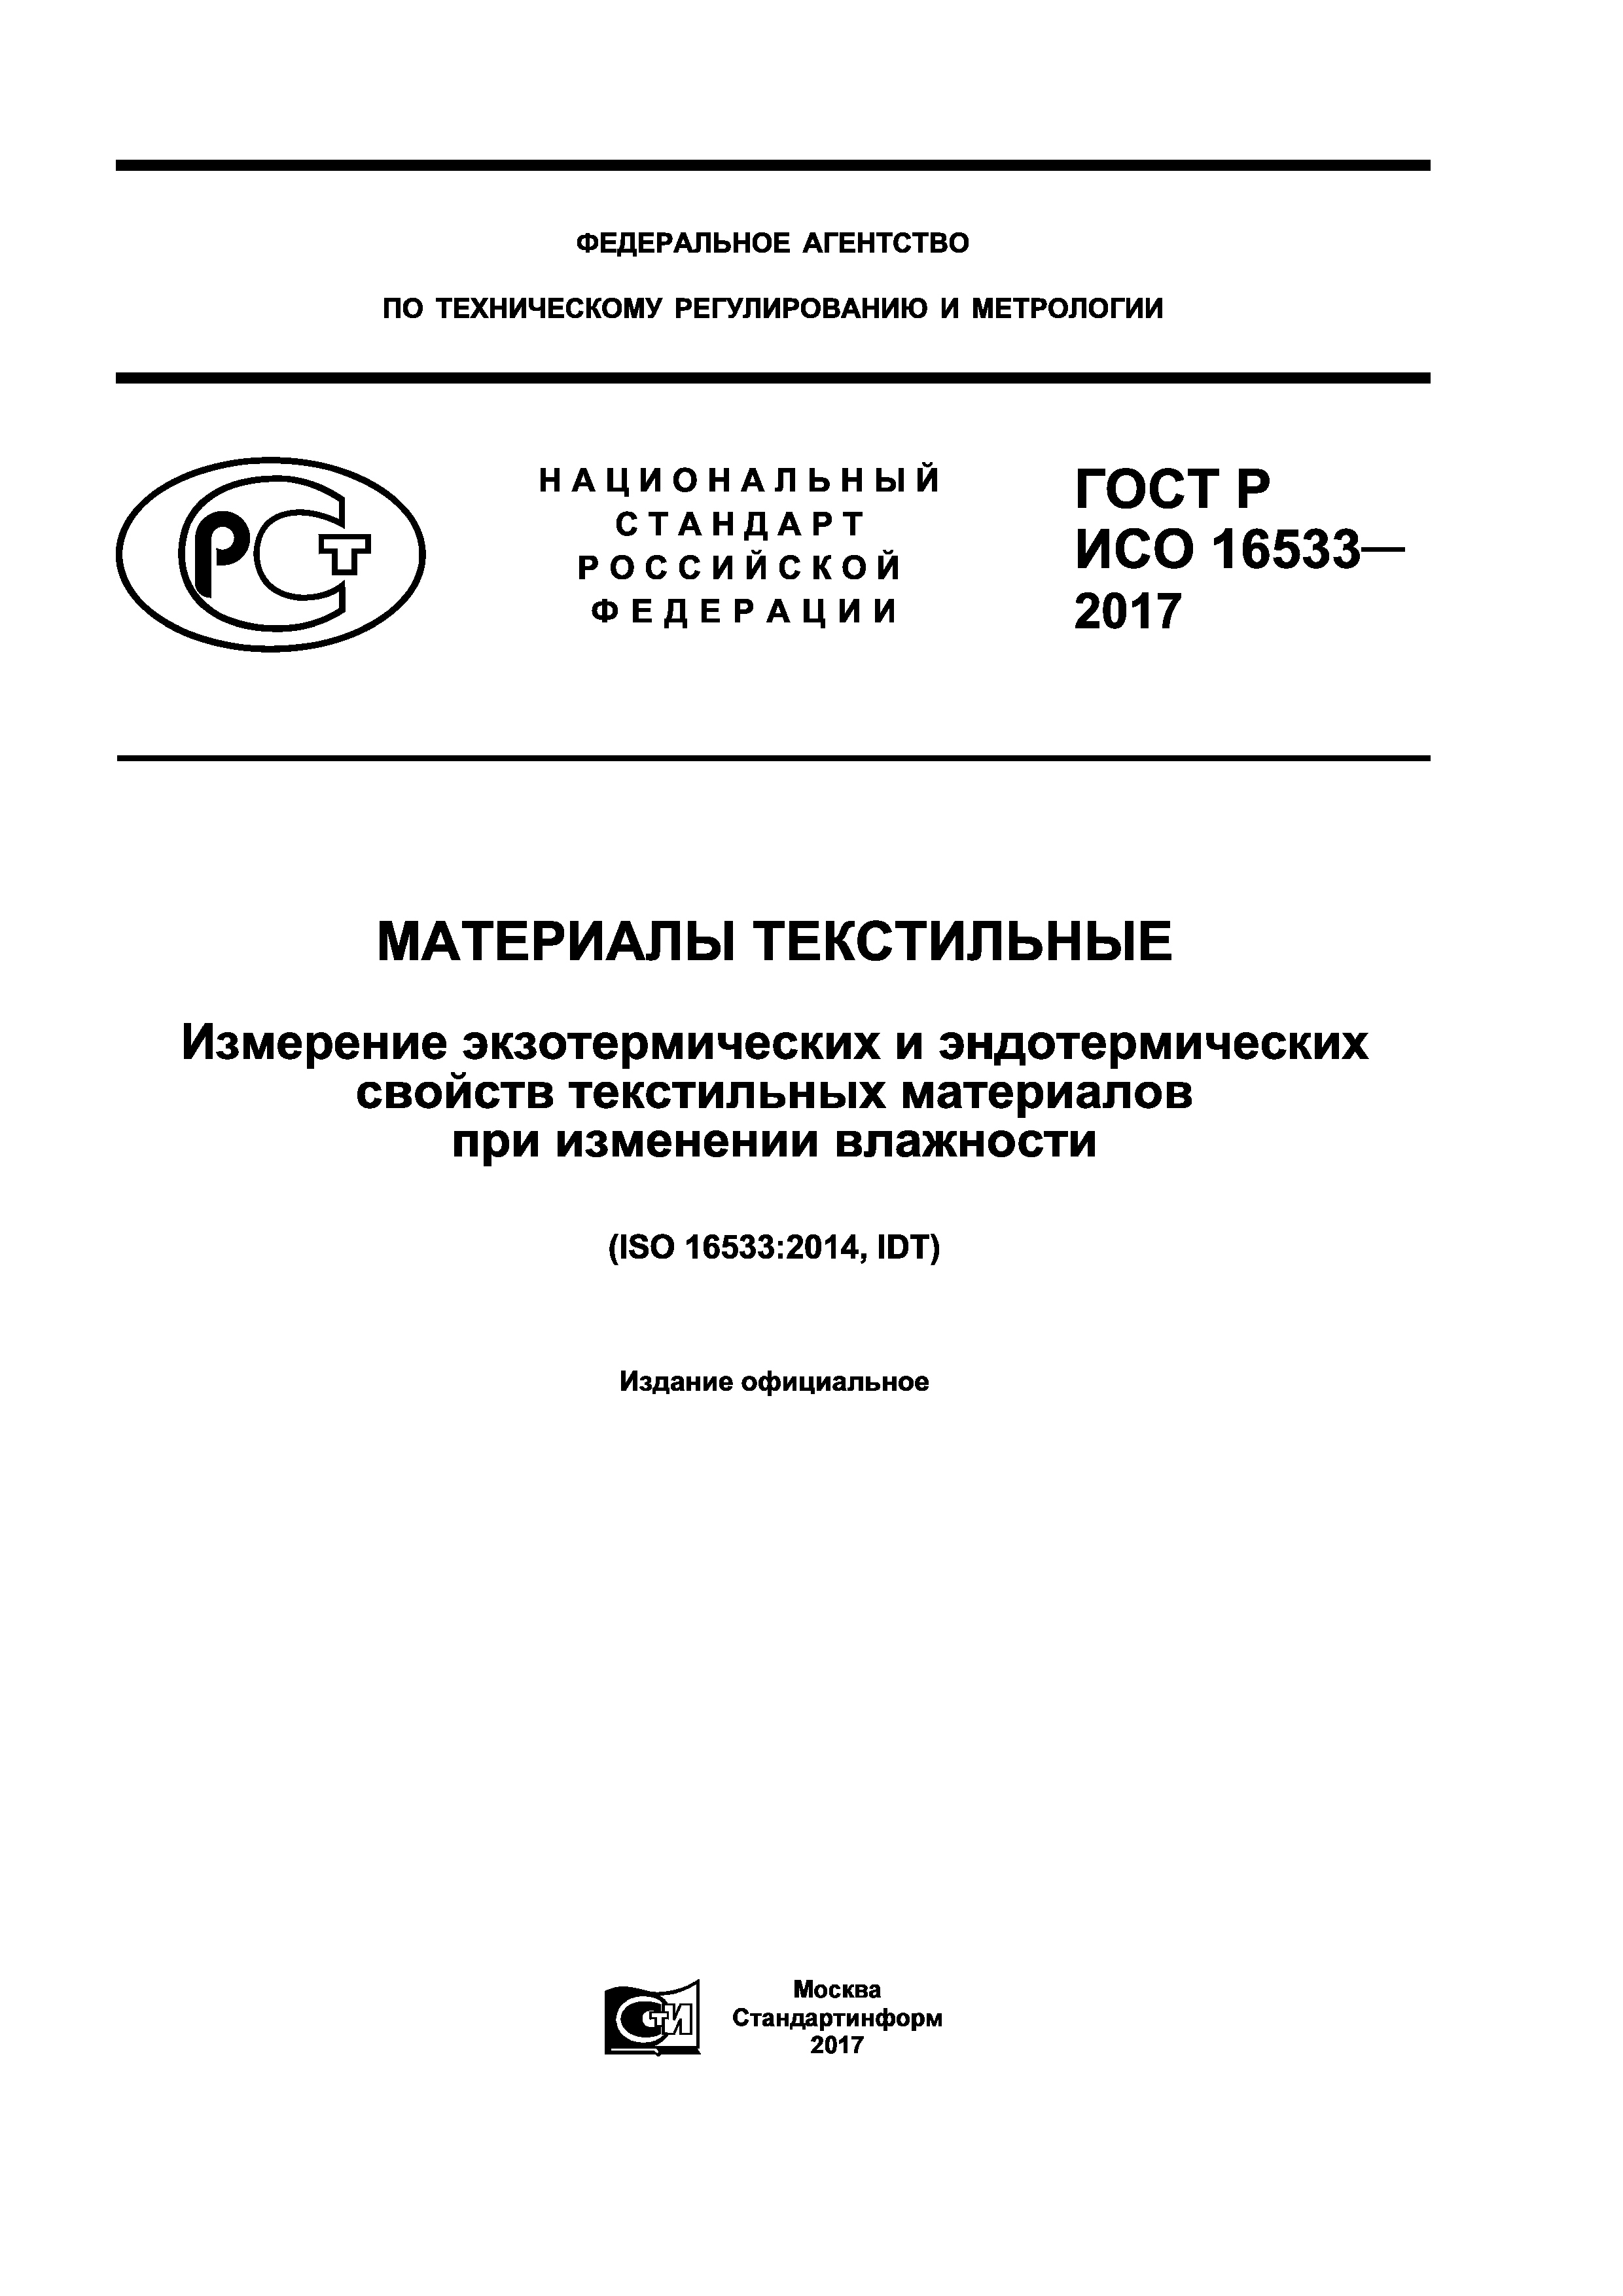 ГОСТ Р ИСО 16533-2017